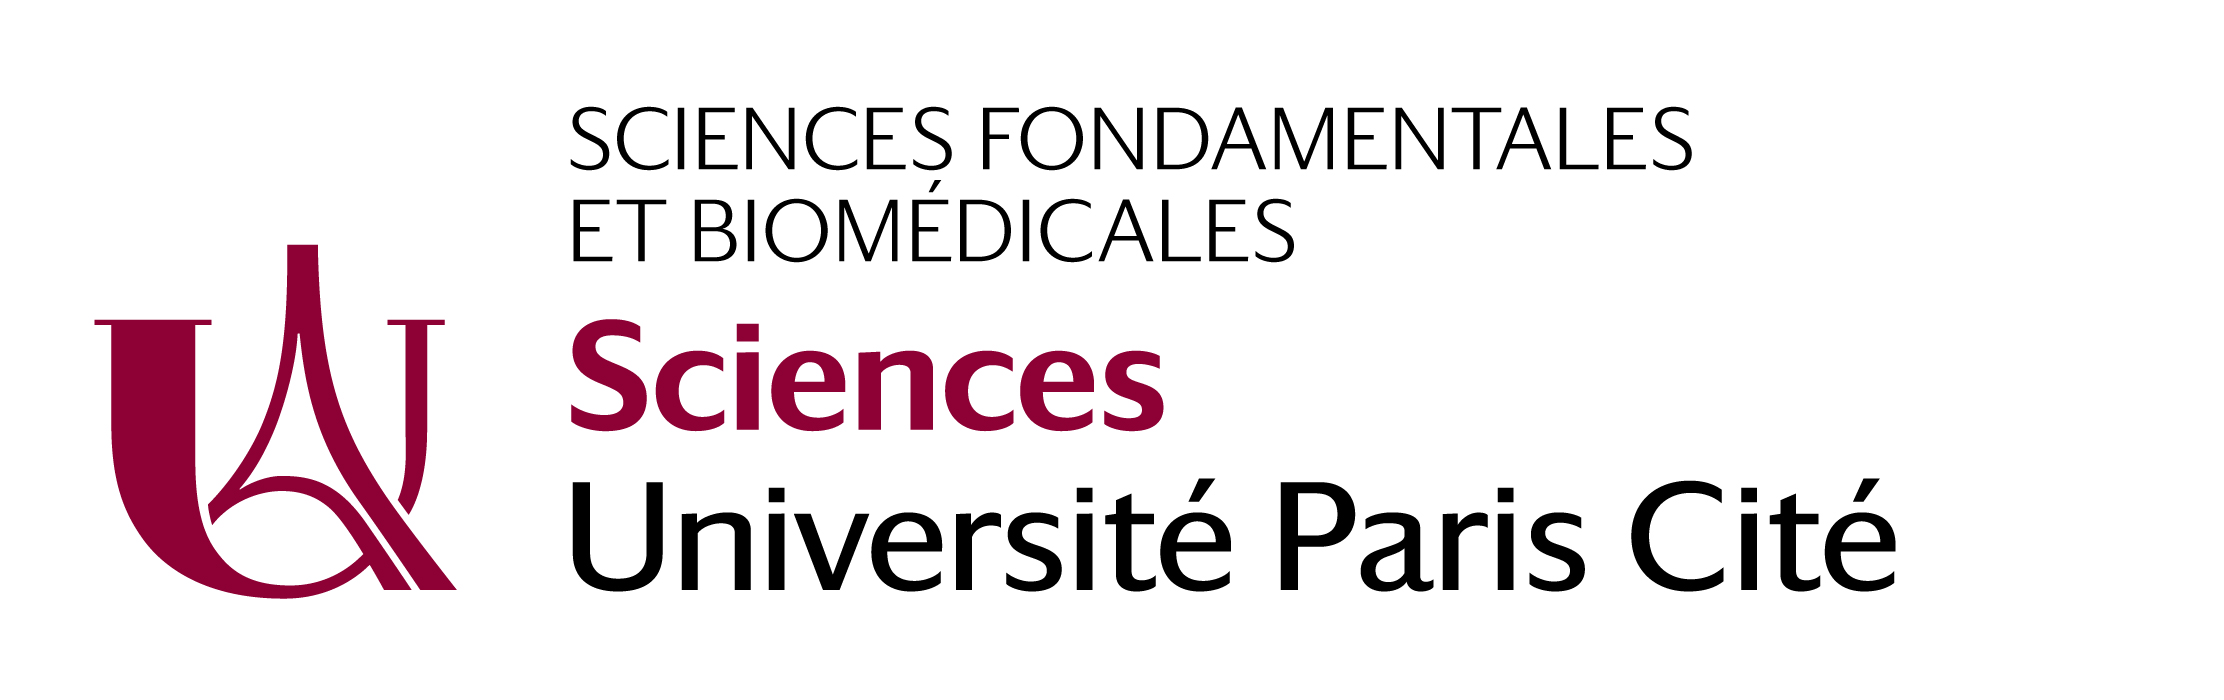 UFR Sciences Fondamentales et Biomédicales